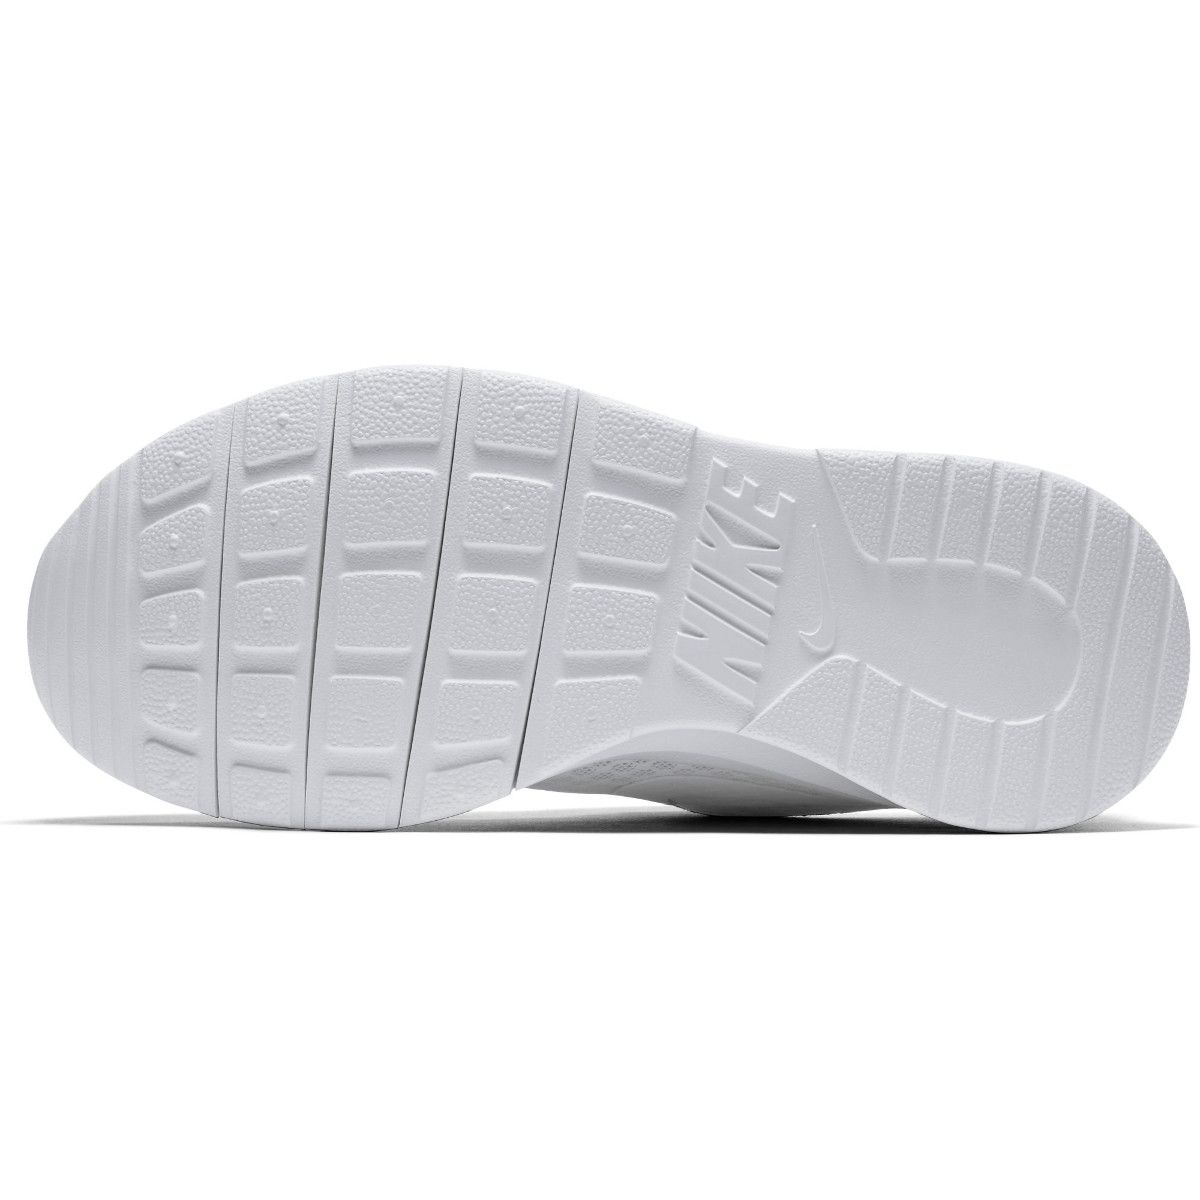 Nike Tanjun (GS) Girls' Sports Shoes 818384-111